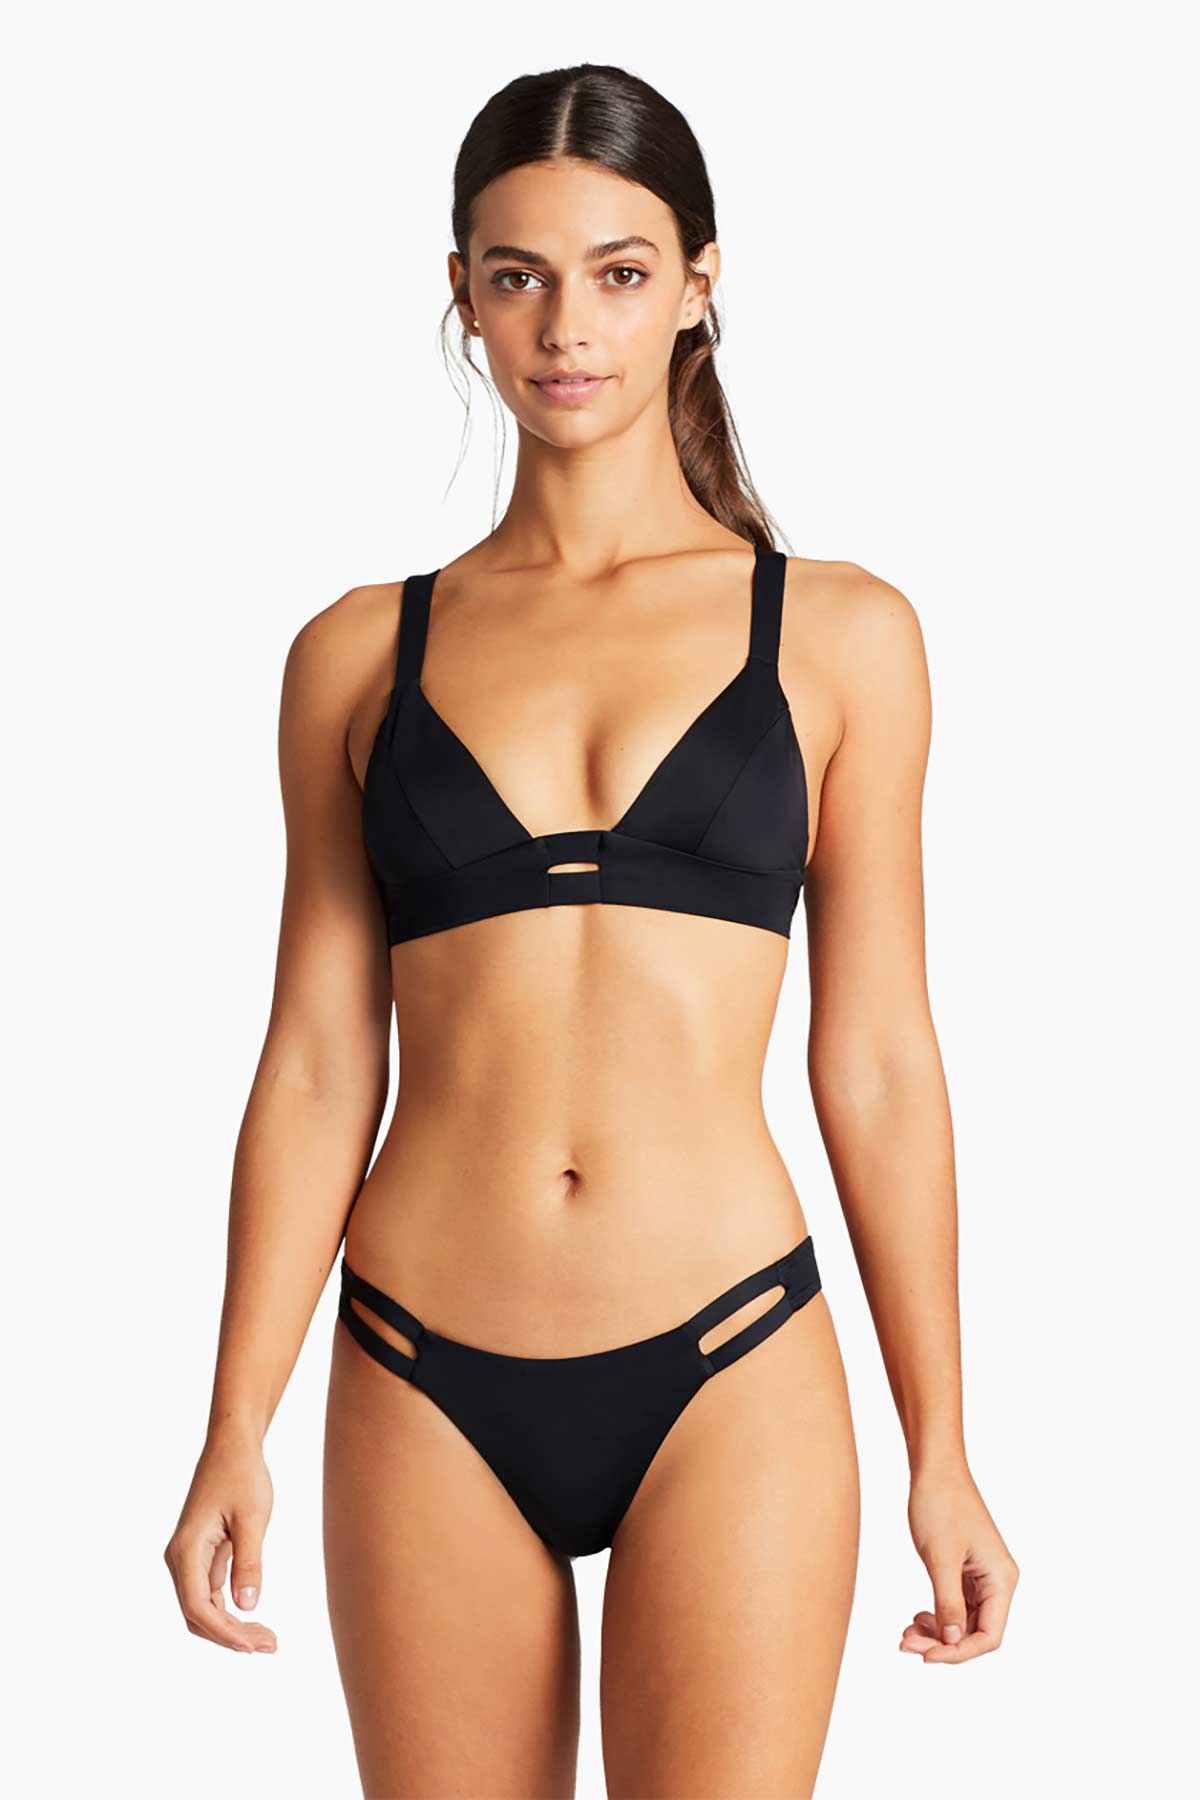 Vitamin A Cosmo Tri Bikini Top - Black EcoRib – Melmira Bra